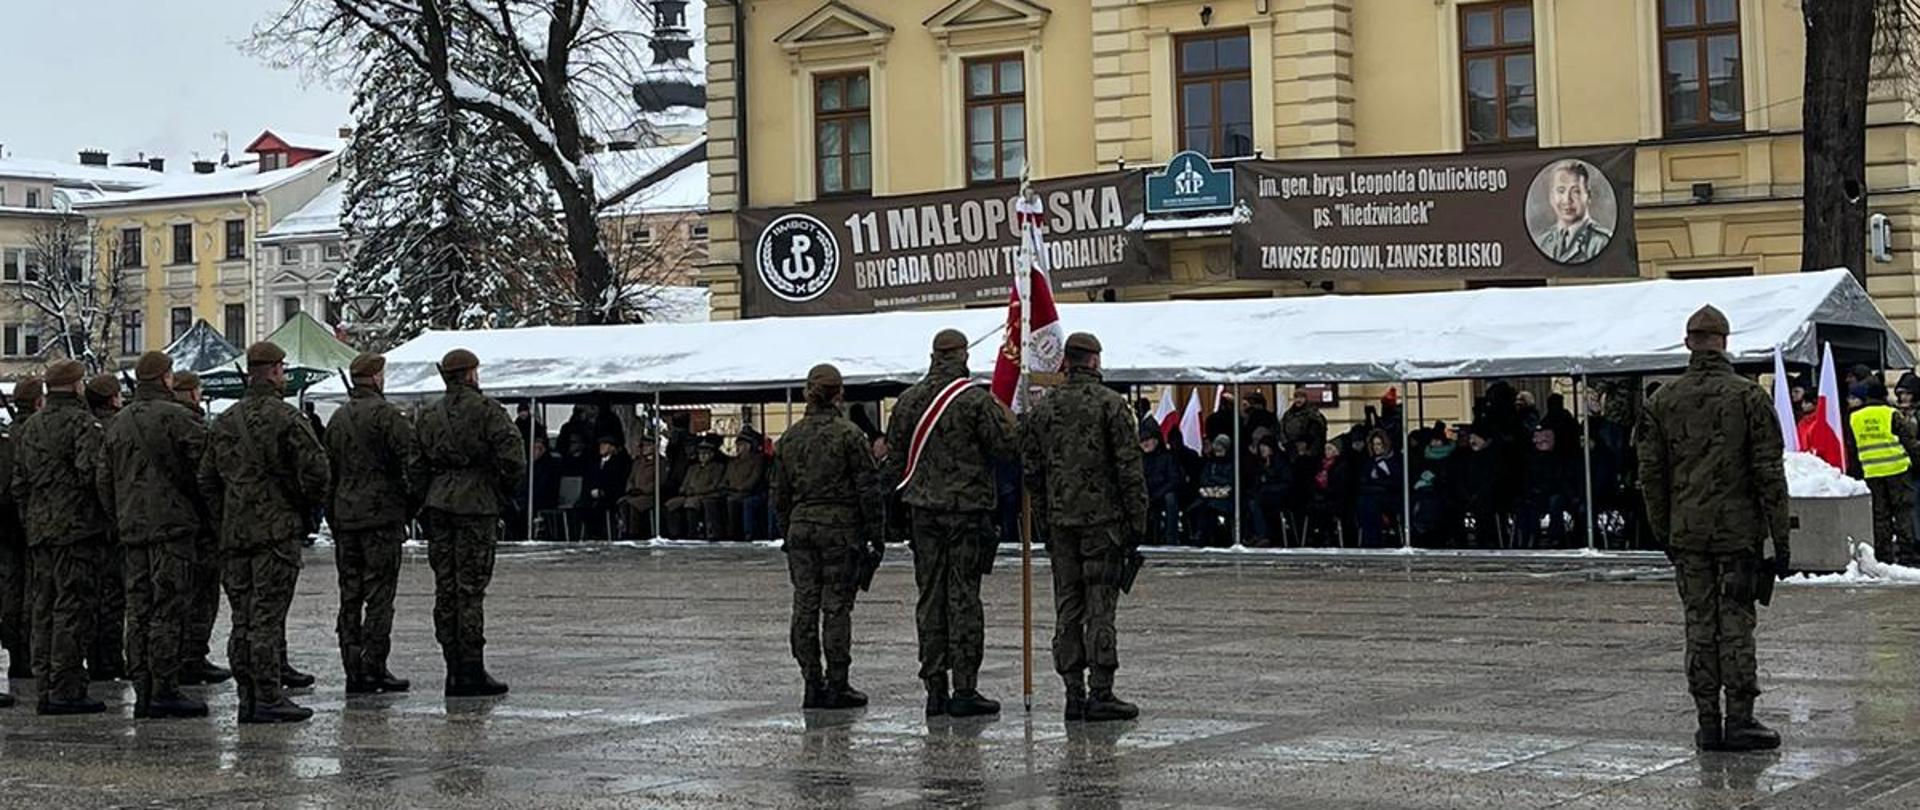 Rynek w Nowym Tartu. Na zdjęciu widziany od tyłu poczet sztandarowy oraz kompania żołnierzy ubranych w wojskowe mundury.